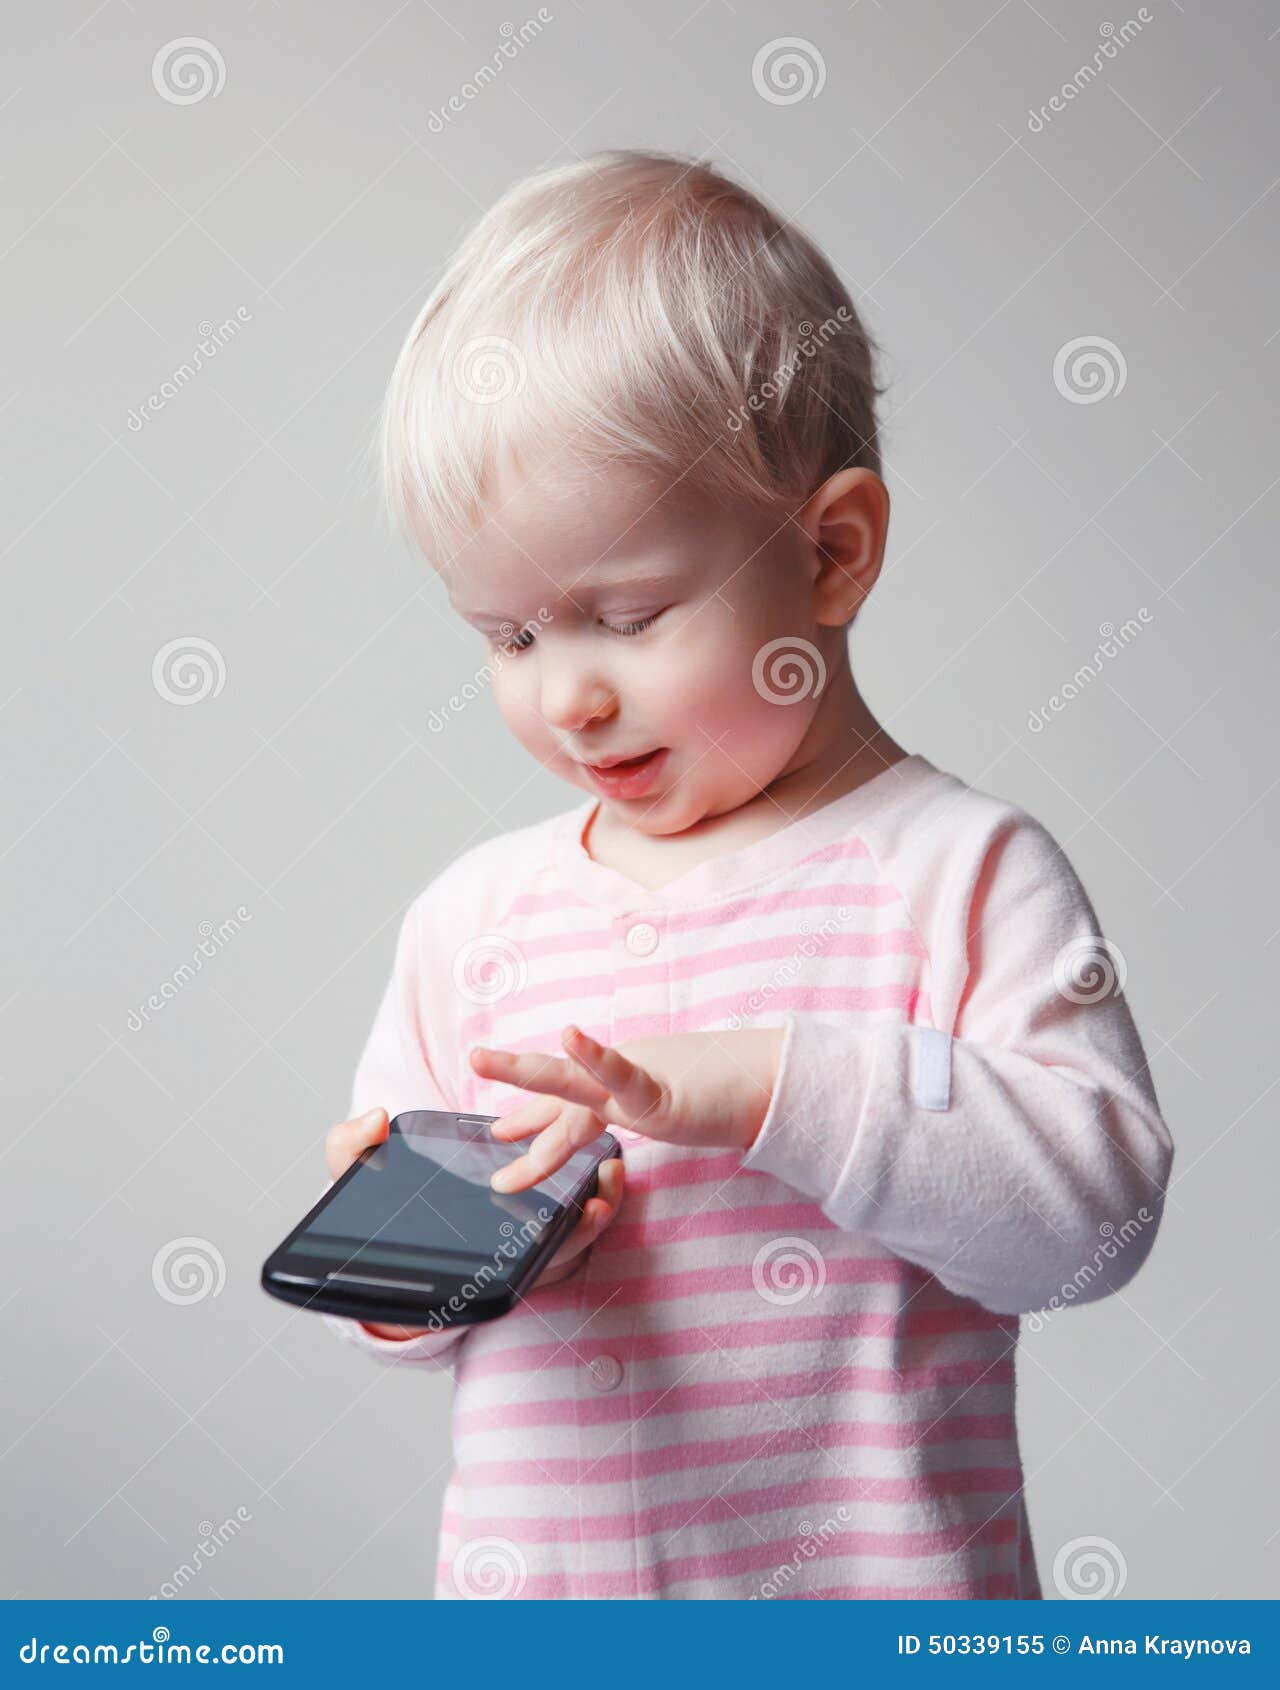 Играть в телефон спать. Ребенок играет в телефон. Засыпающий с телефоном ребенок. Играть в телефон. Картинка грудной ребенок играет с мобильником.